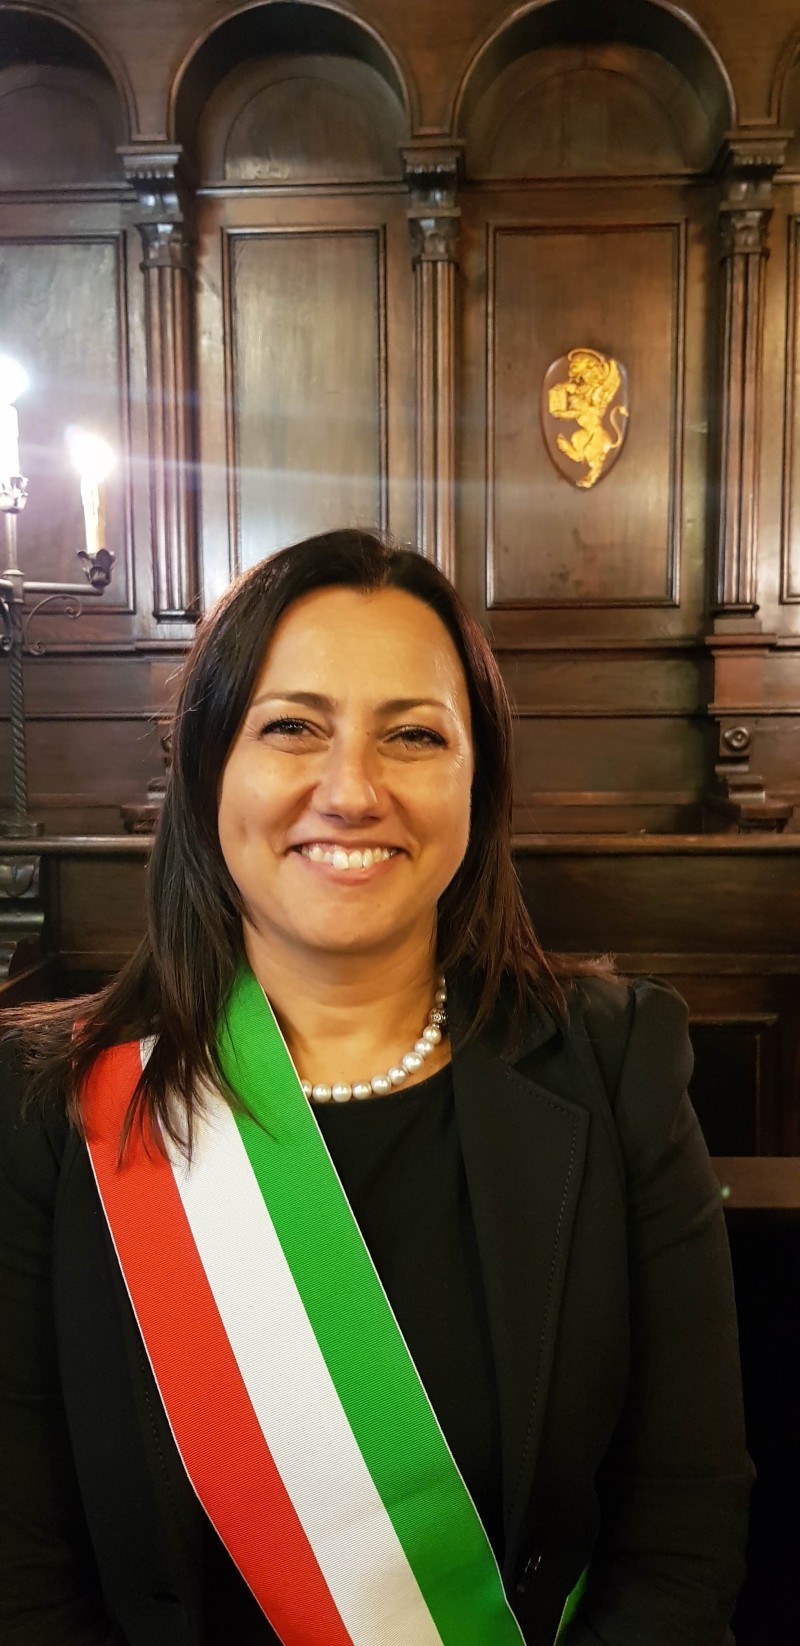 PD e PSI hanno raggiunto l'intesa sulla ricandidatura di Roberta Casini a Lucignano